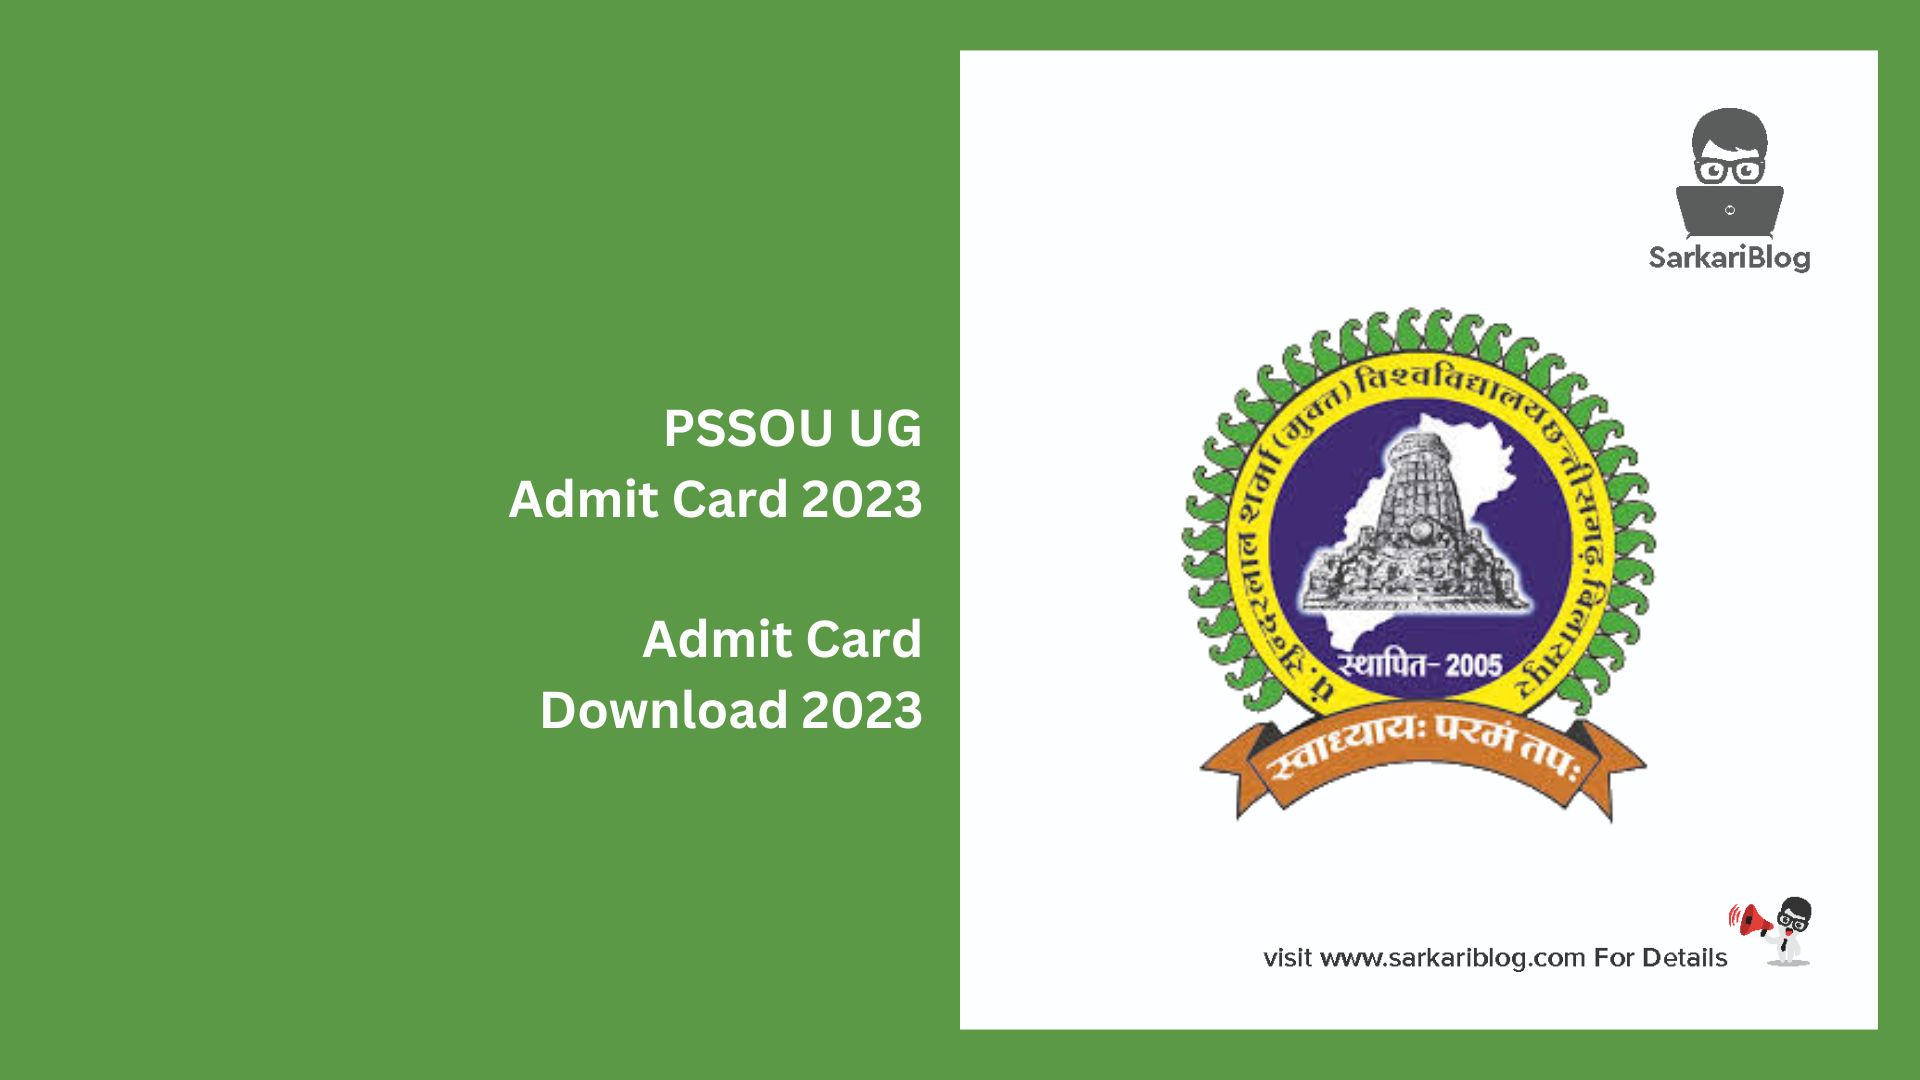 PSSOU UG Admit Card 2023